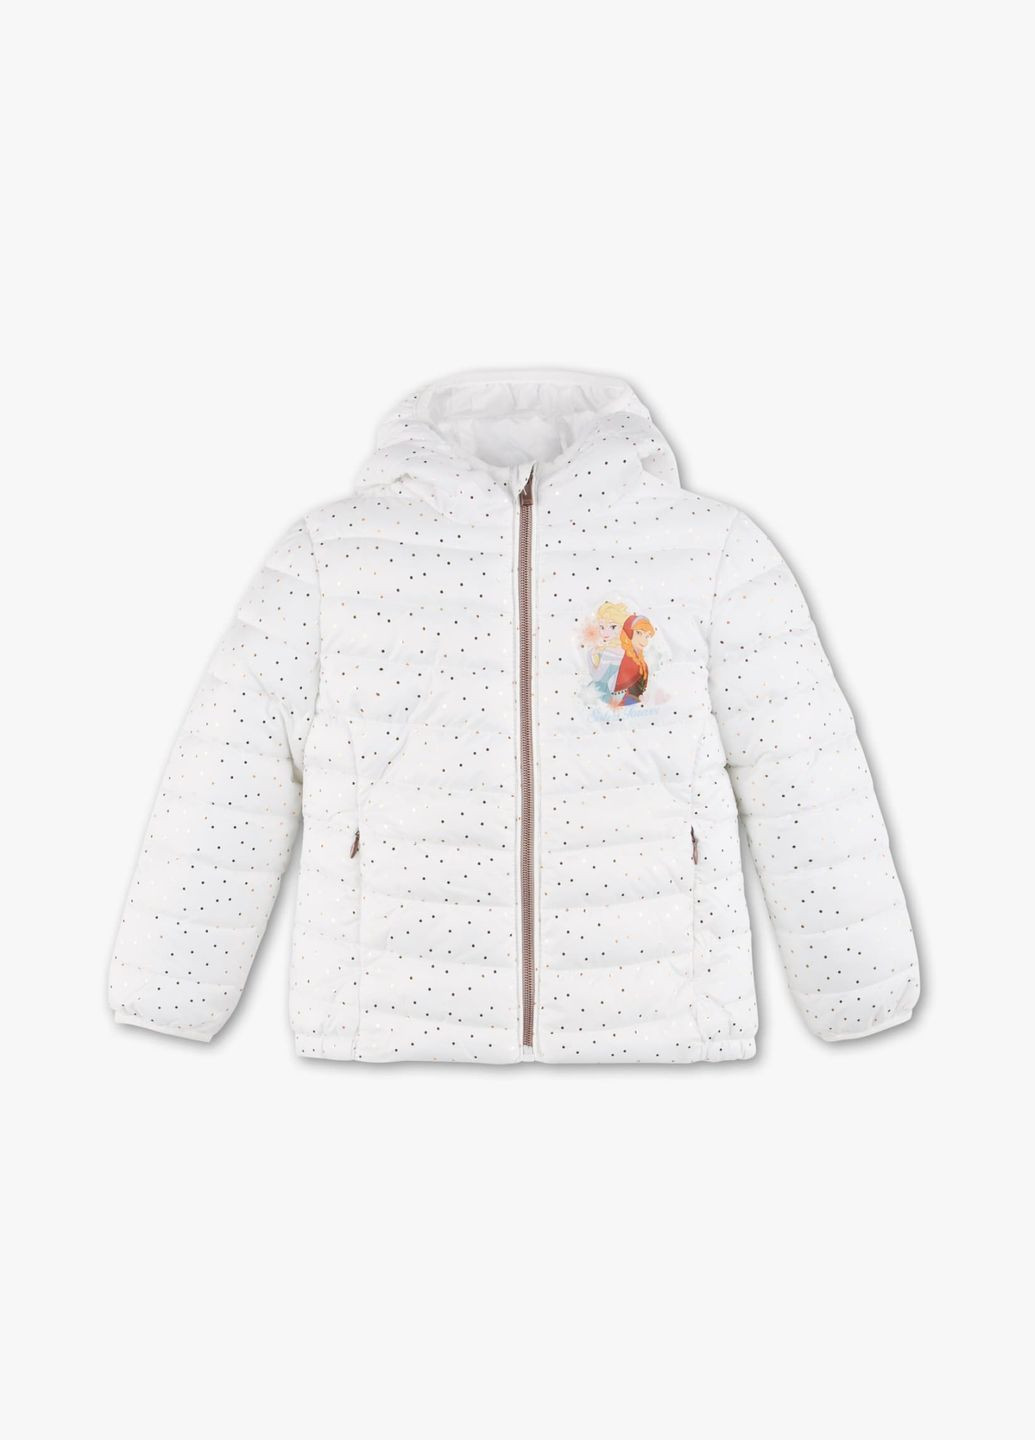 Белая детская демисезонная куртка для девочки frozen 92 размер белая 1033169 C&A